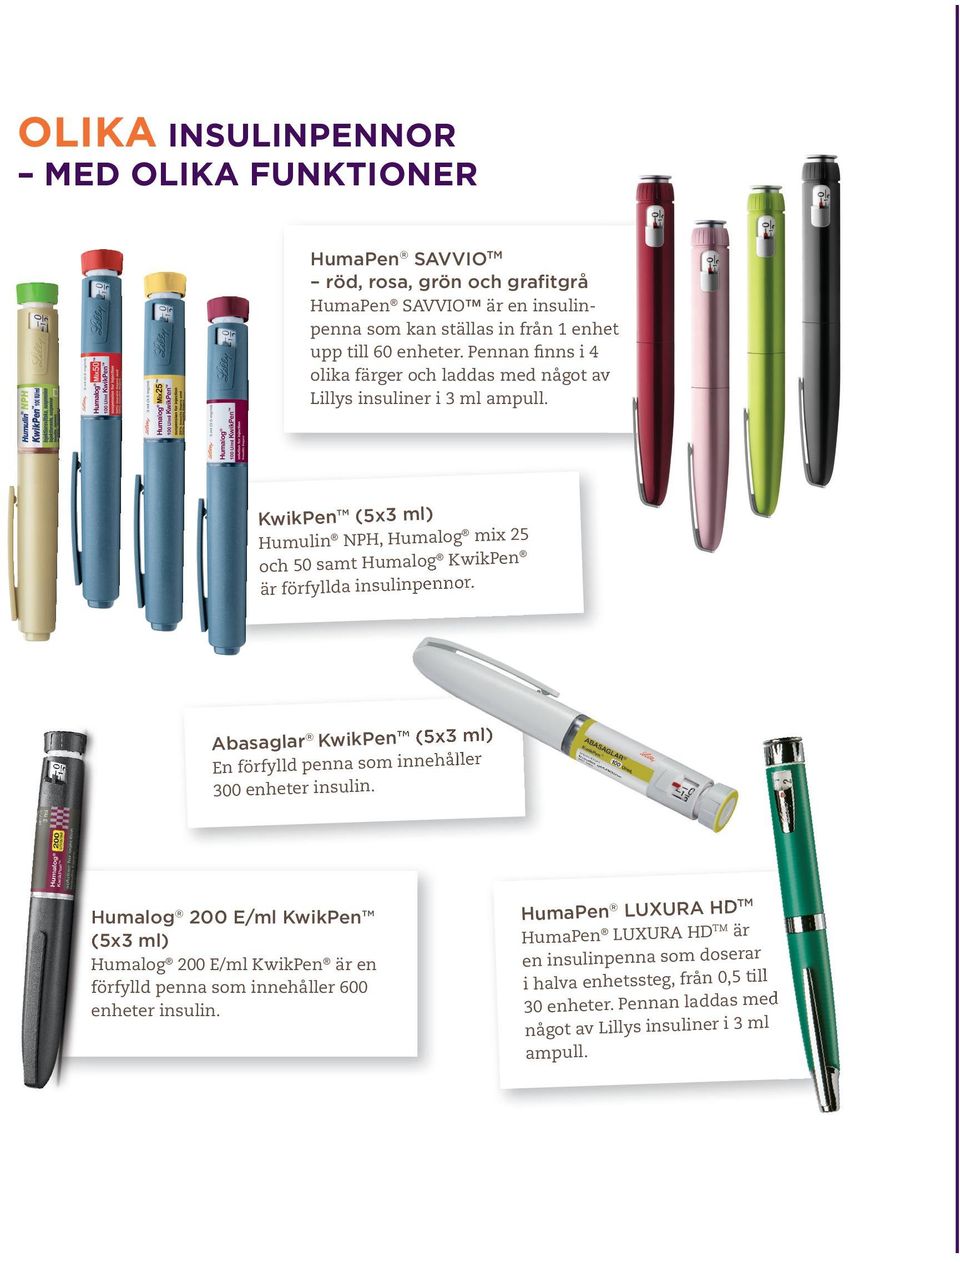 KwikPen (5x3 ml) Humulin NPH, Humalog mix 25 och 50 samt Humalog KwikPen är förfyllda insulinpennor. Abasaglar KwikPen (5x3 ml) En förfylld penna som innehåller 300 enheter insulin.